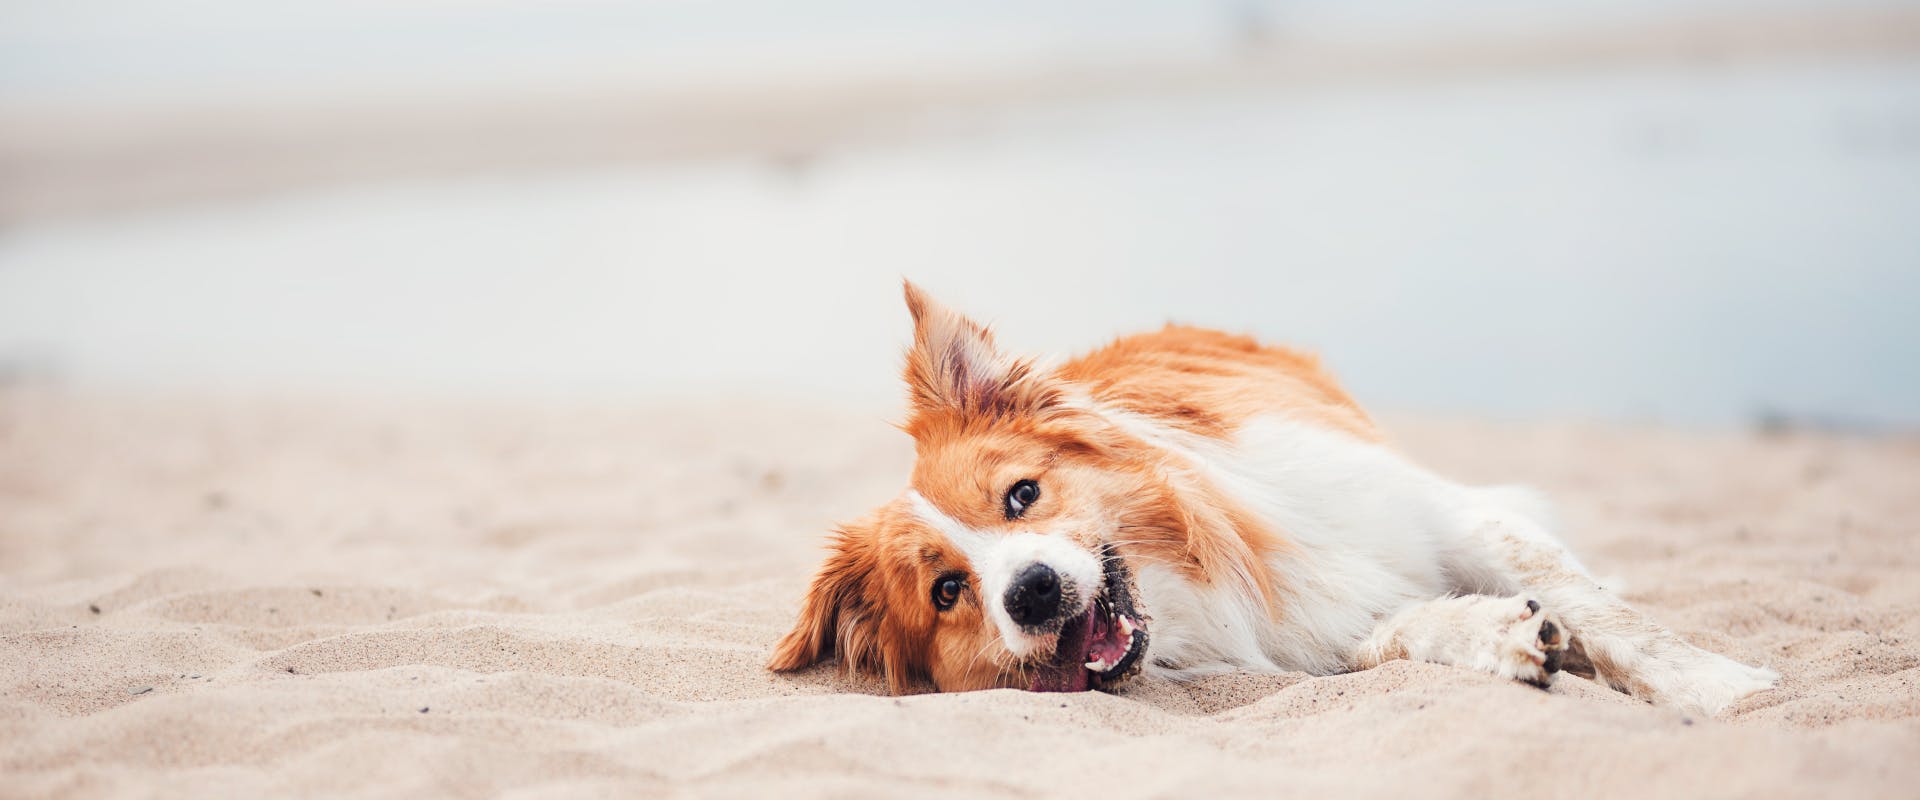 a happy tired dog lies on a sandy dog-friendly Santa Cruz beach